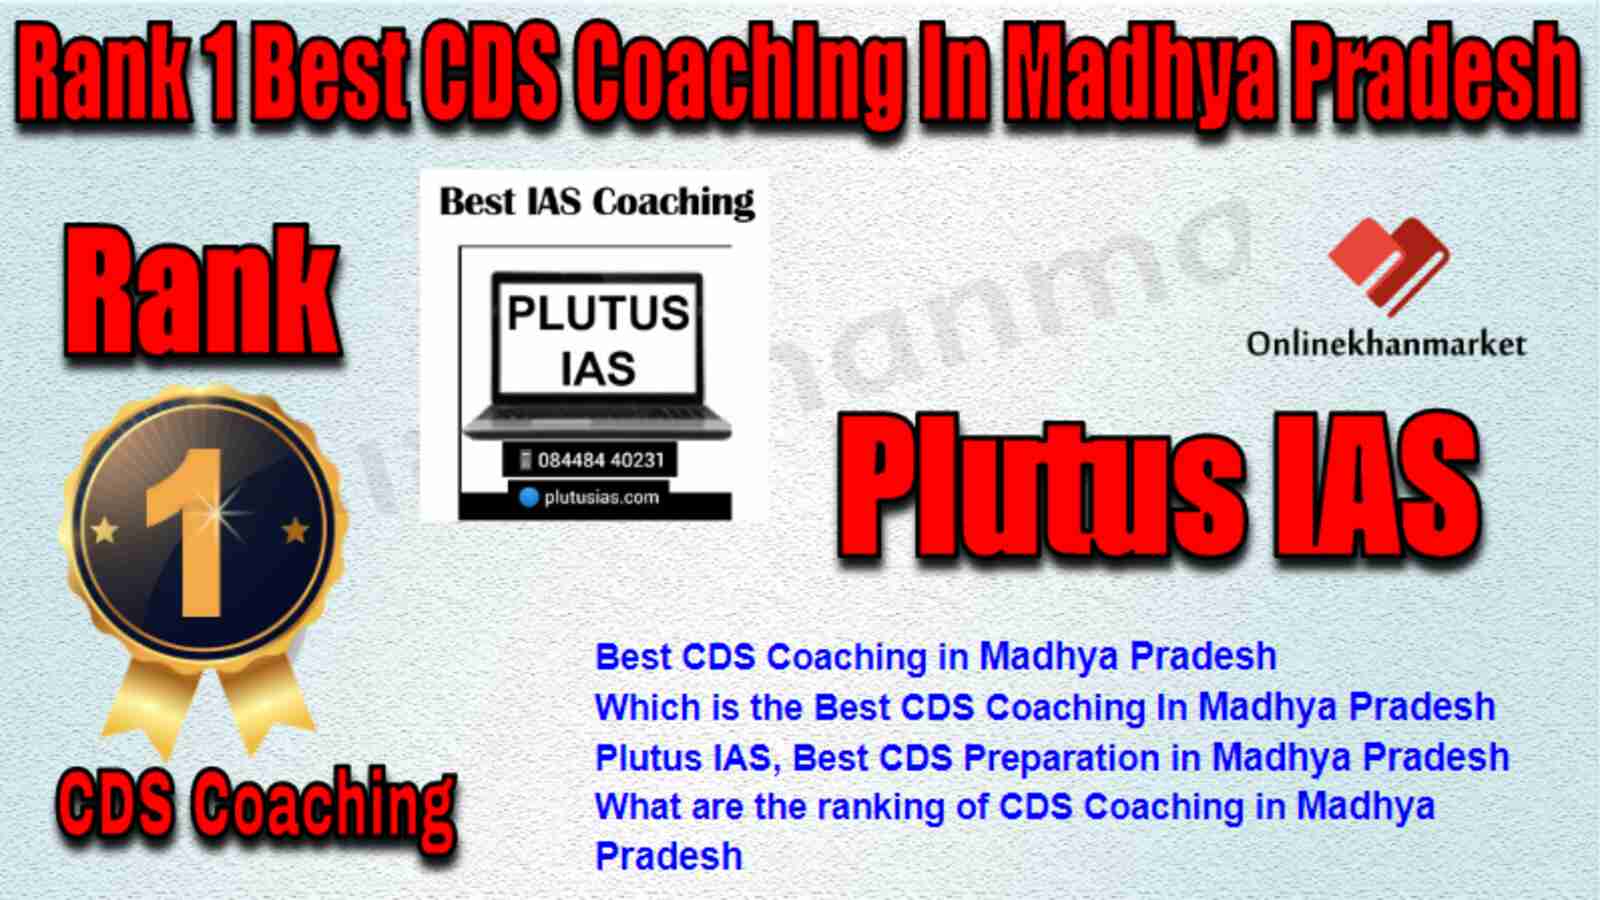 Rank 1 Best CDS Coaching in Madhya Pradesh